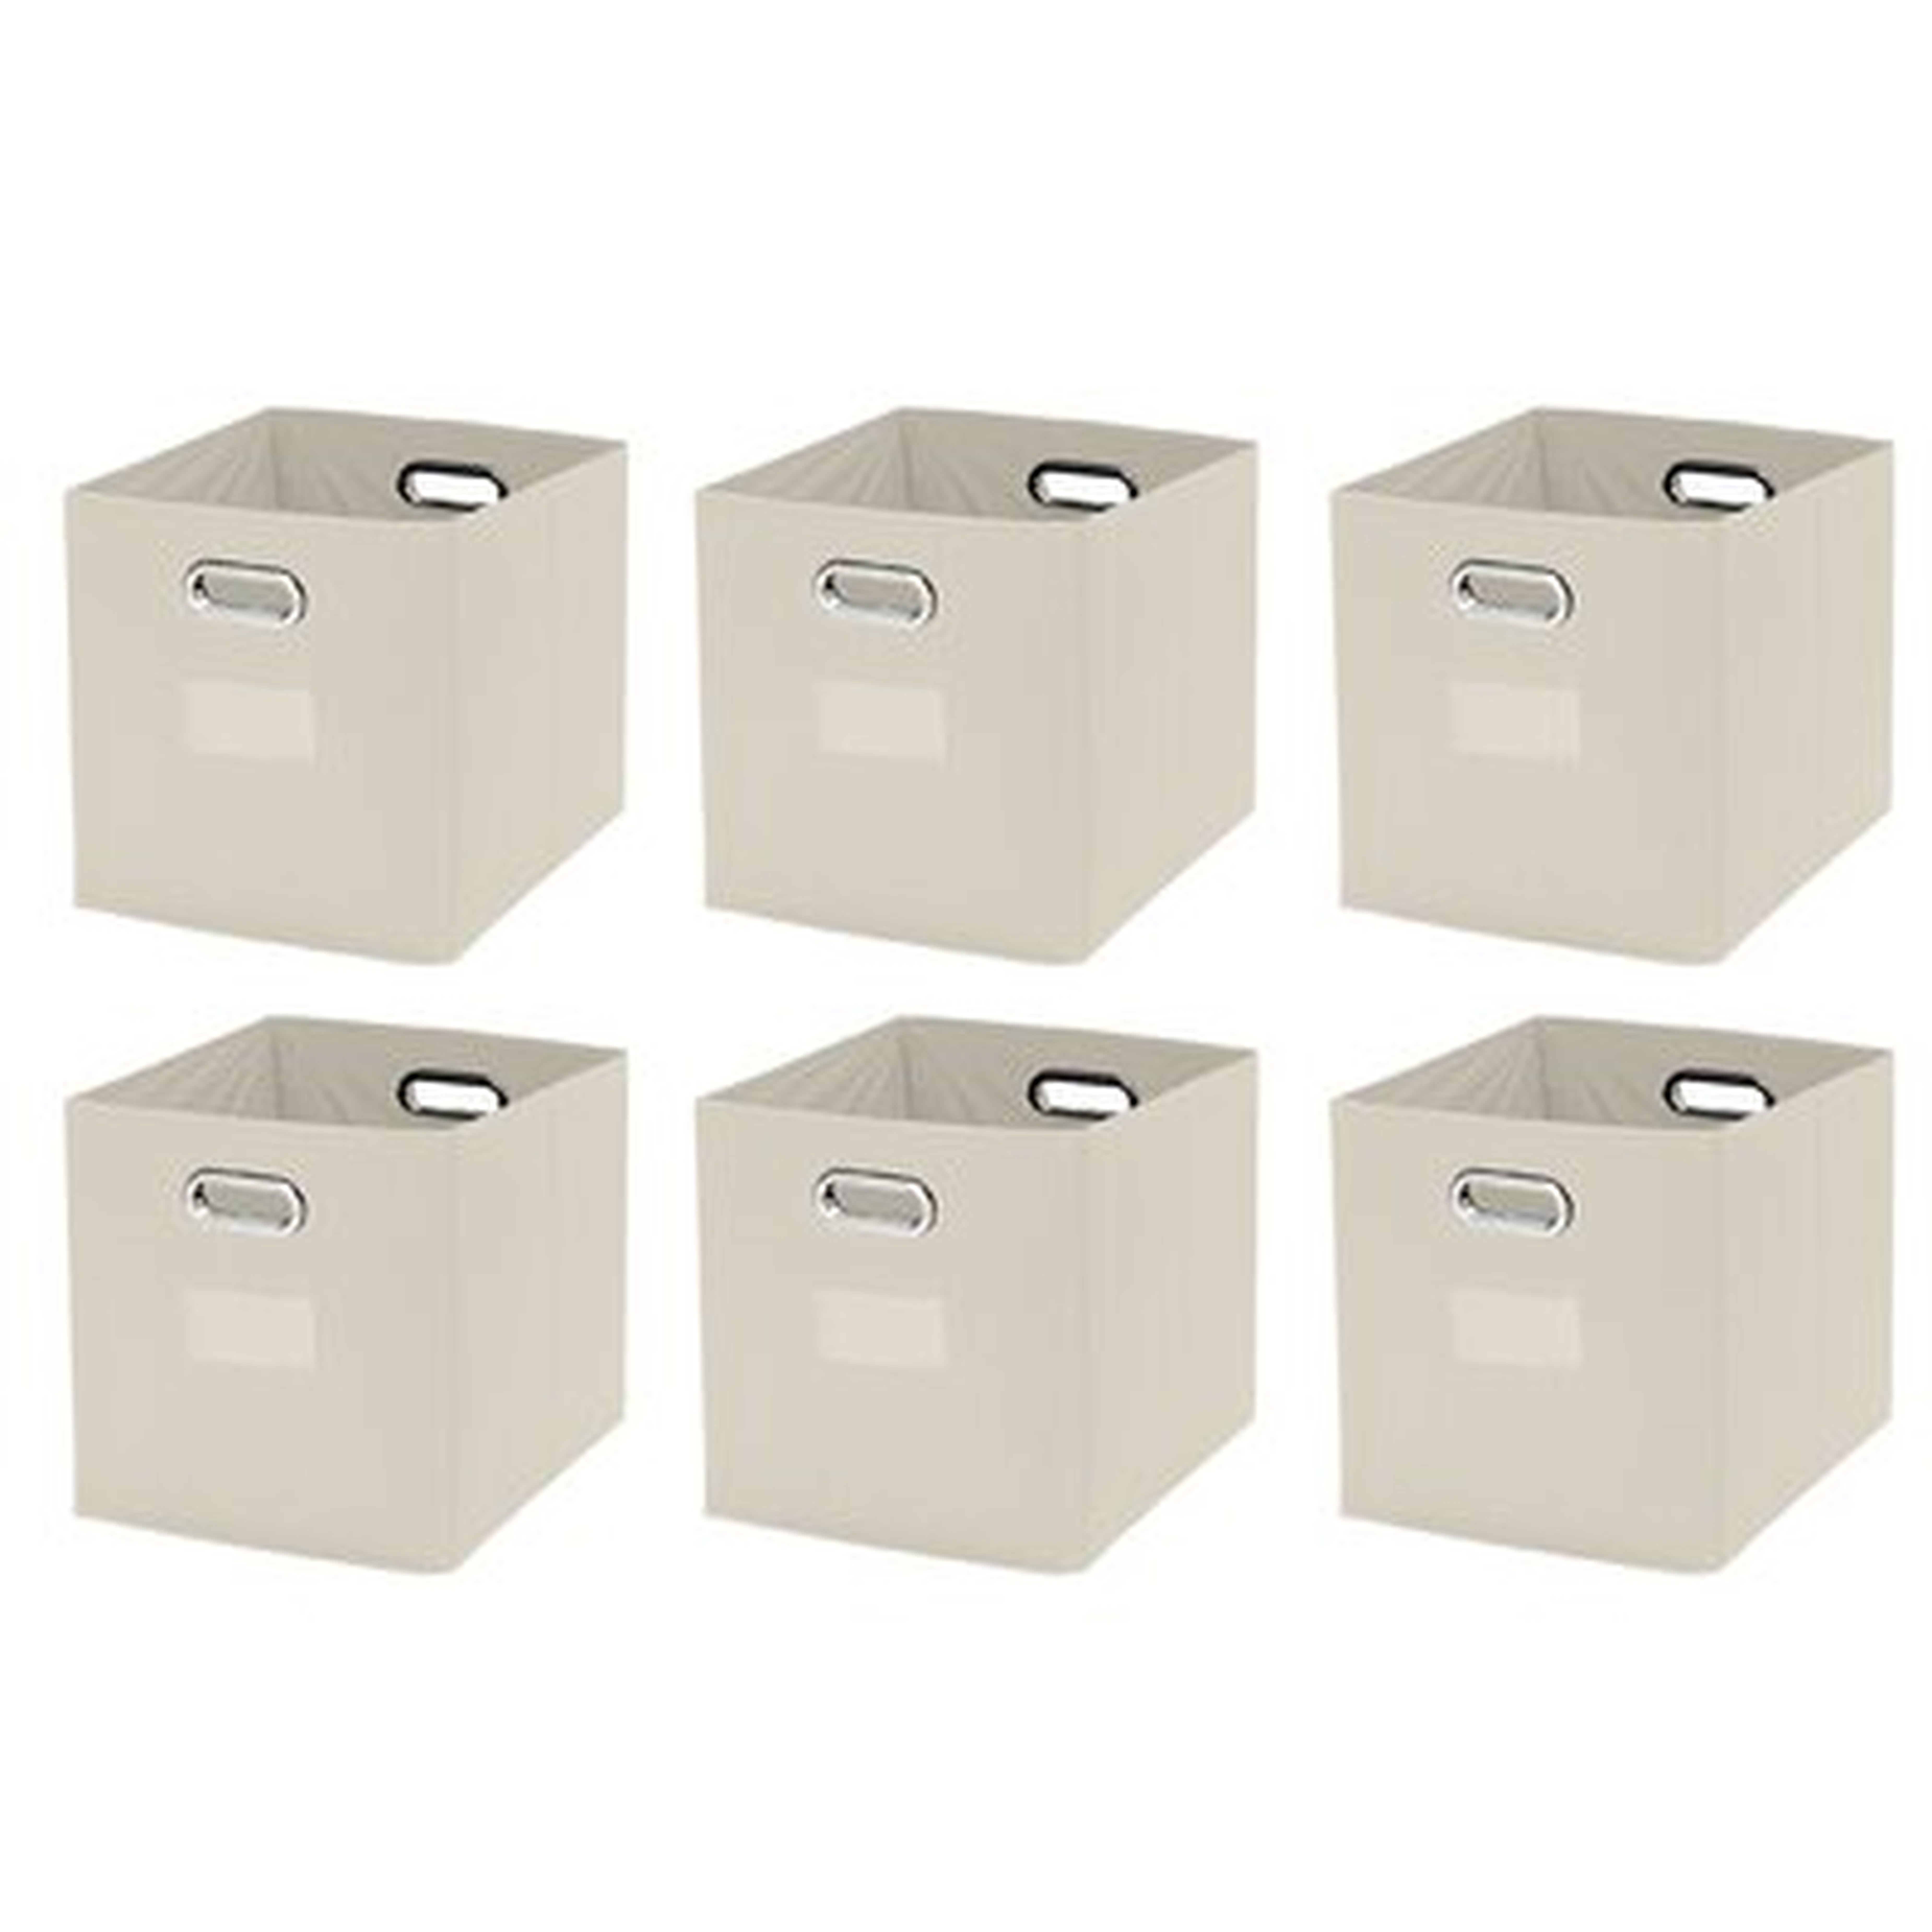 Foldable Storage Cardboard Bin - Wayfair